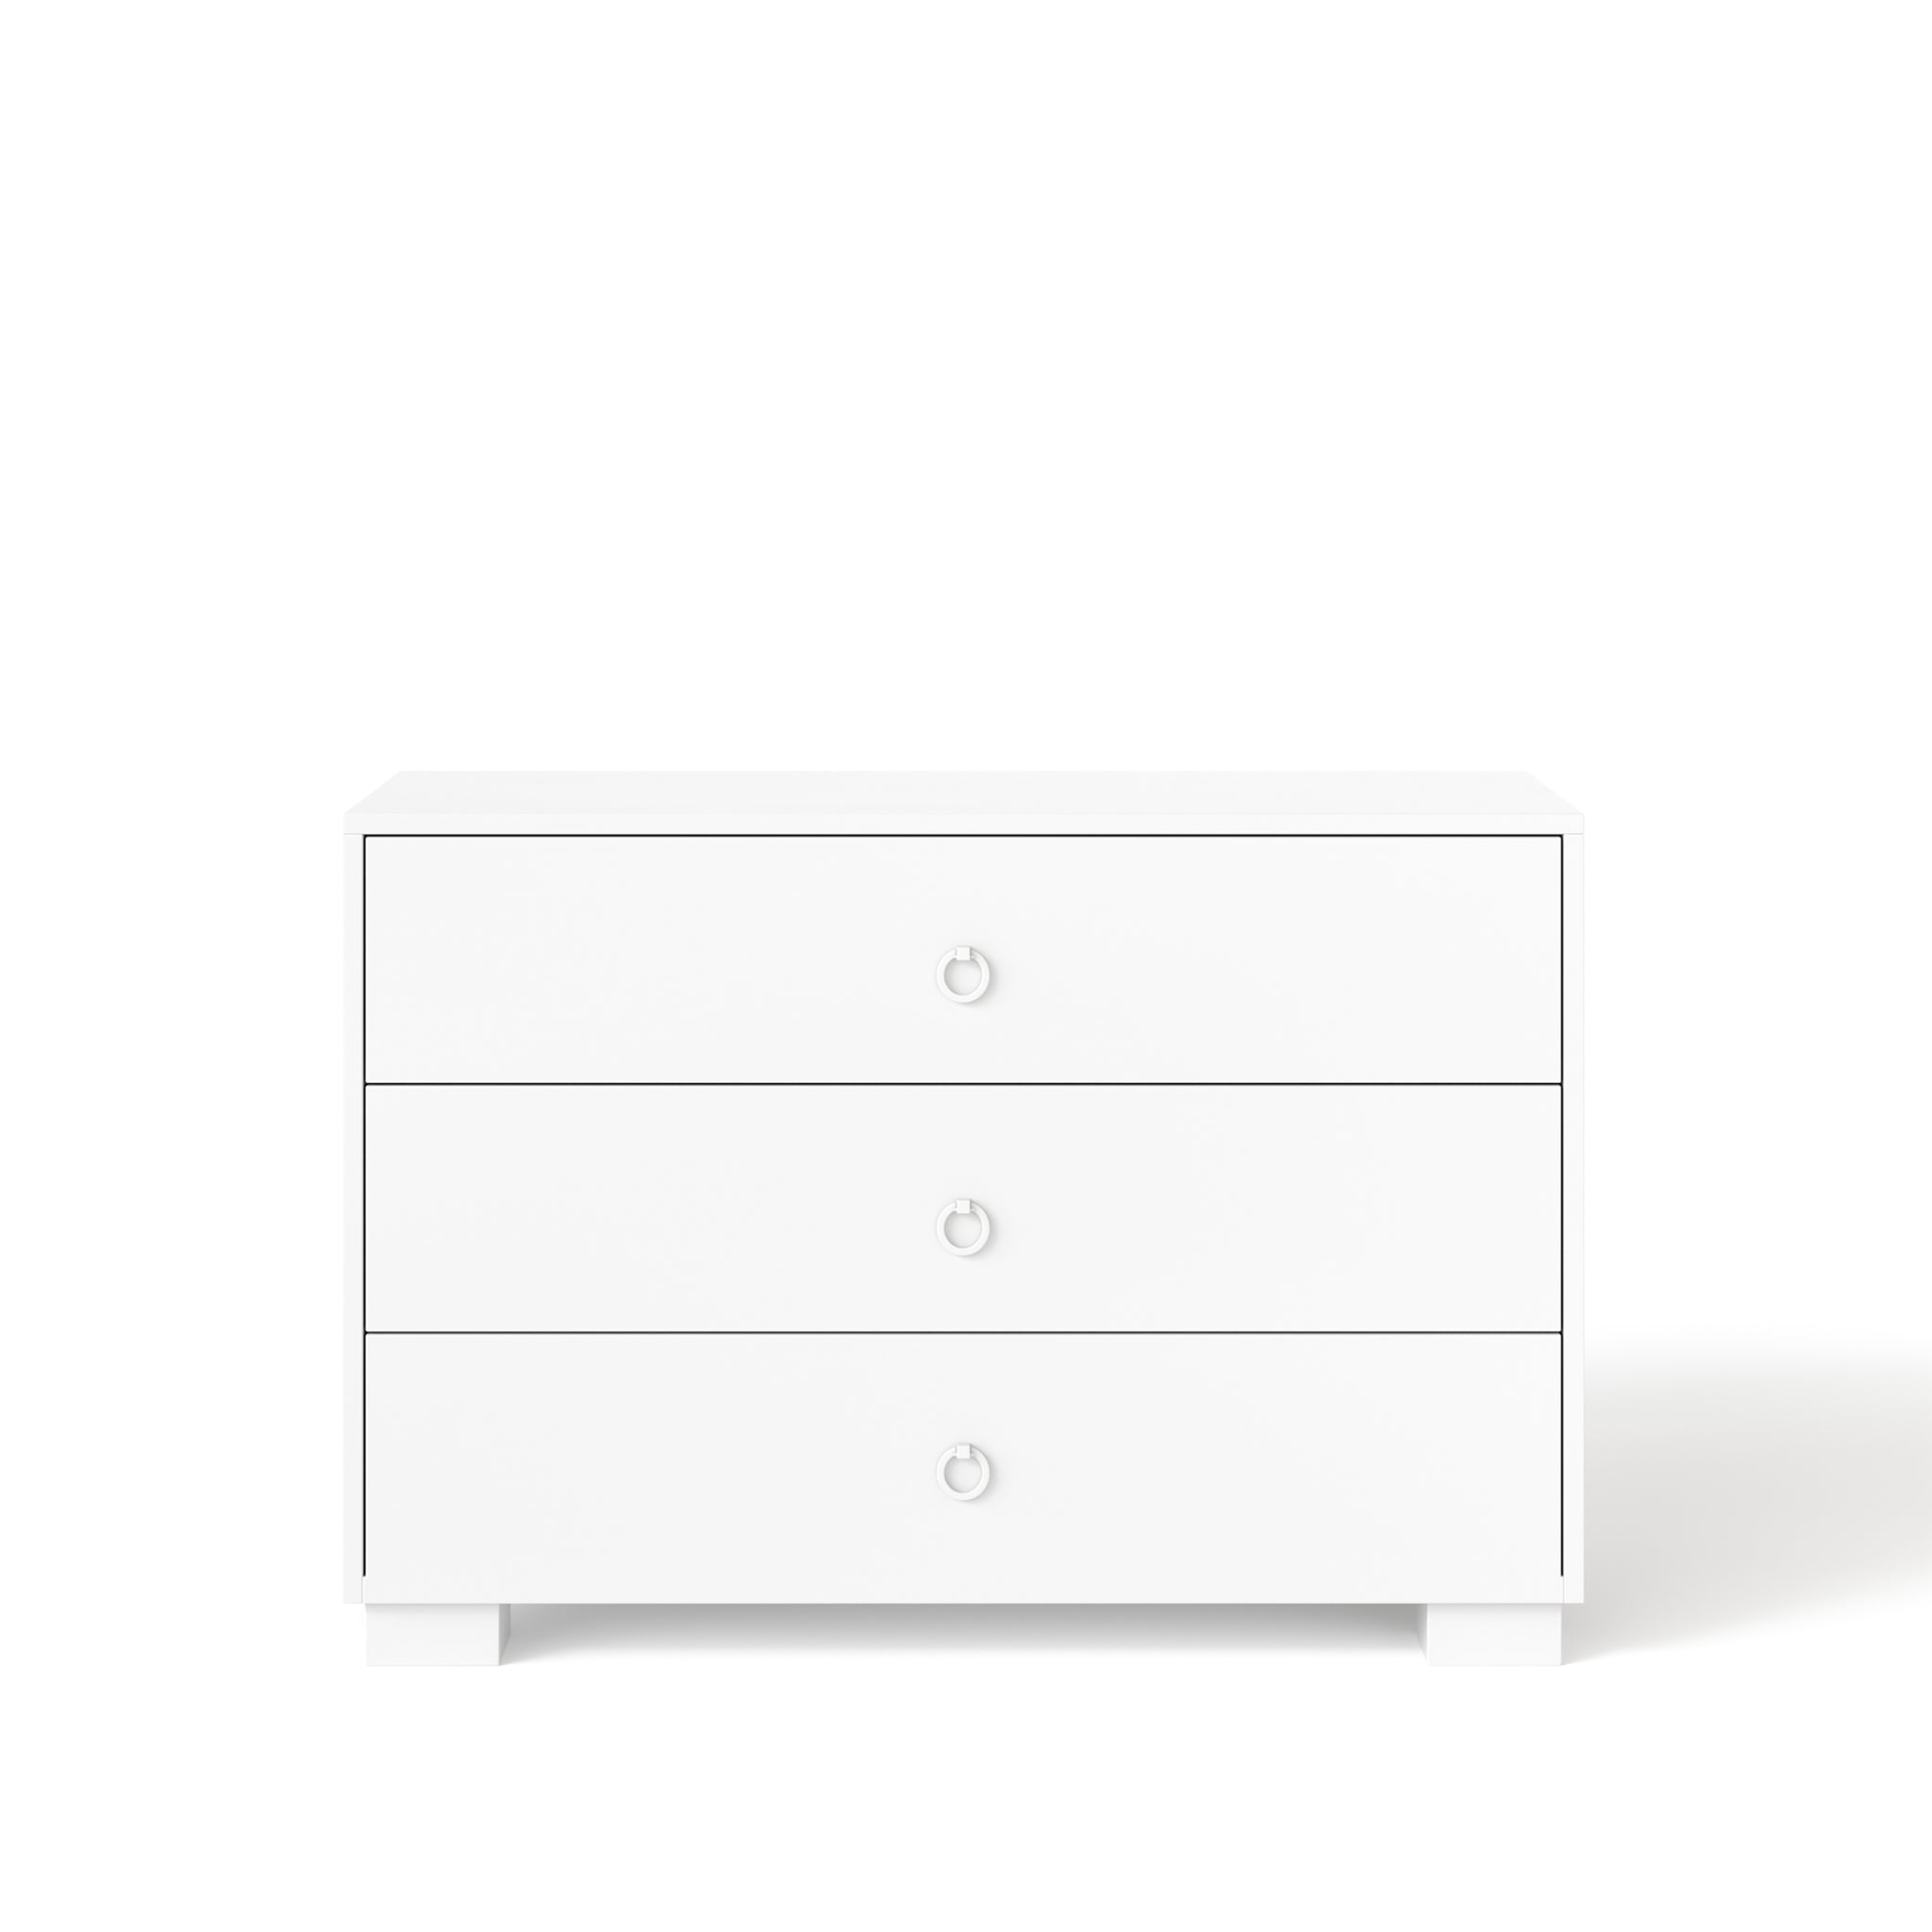 cabana 3-drawer dresser - white maple